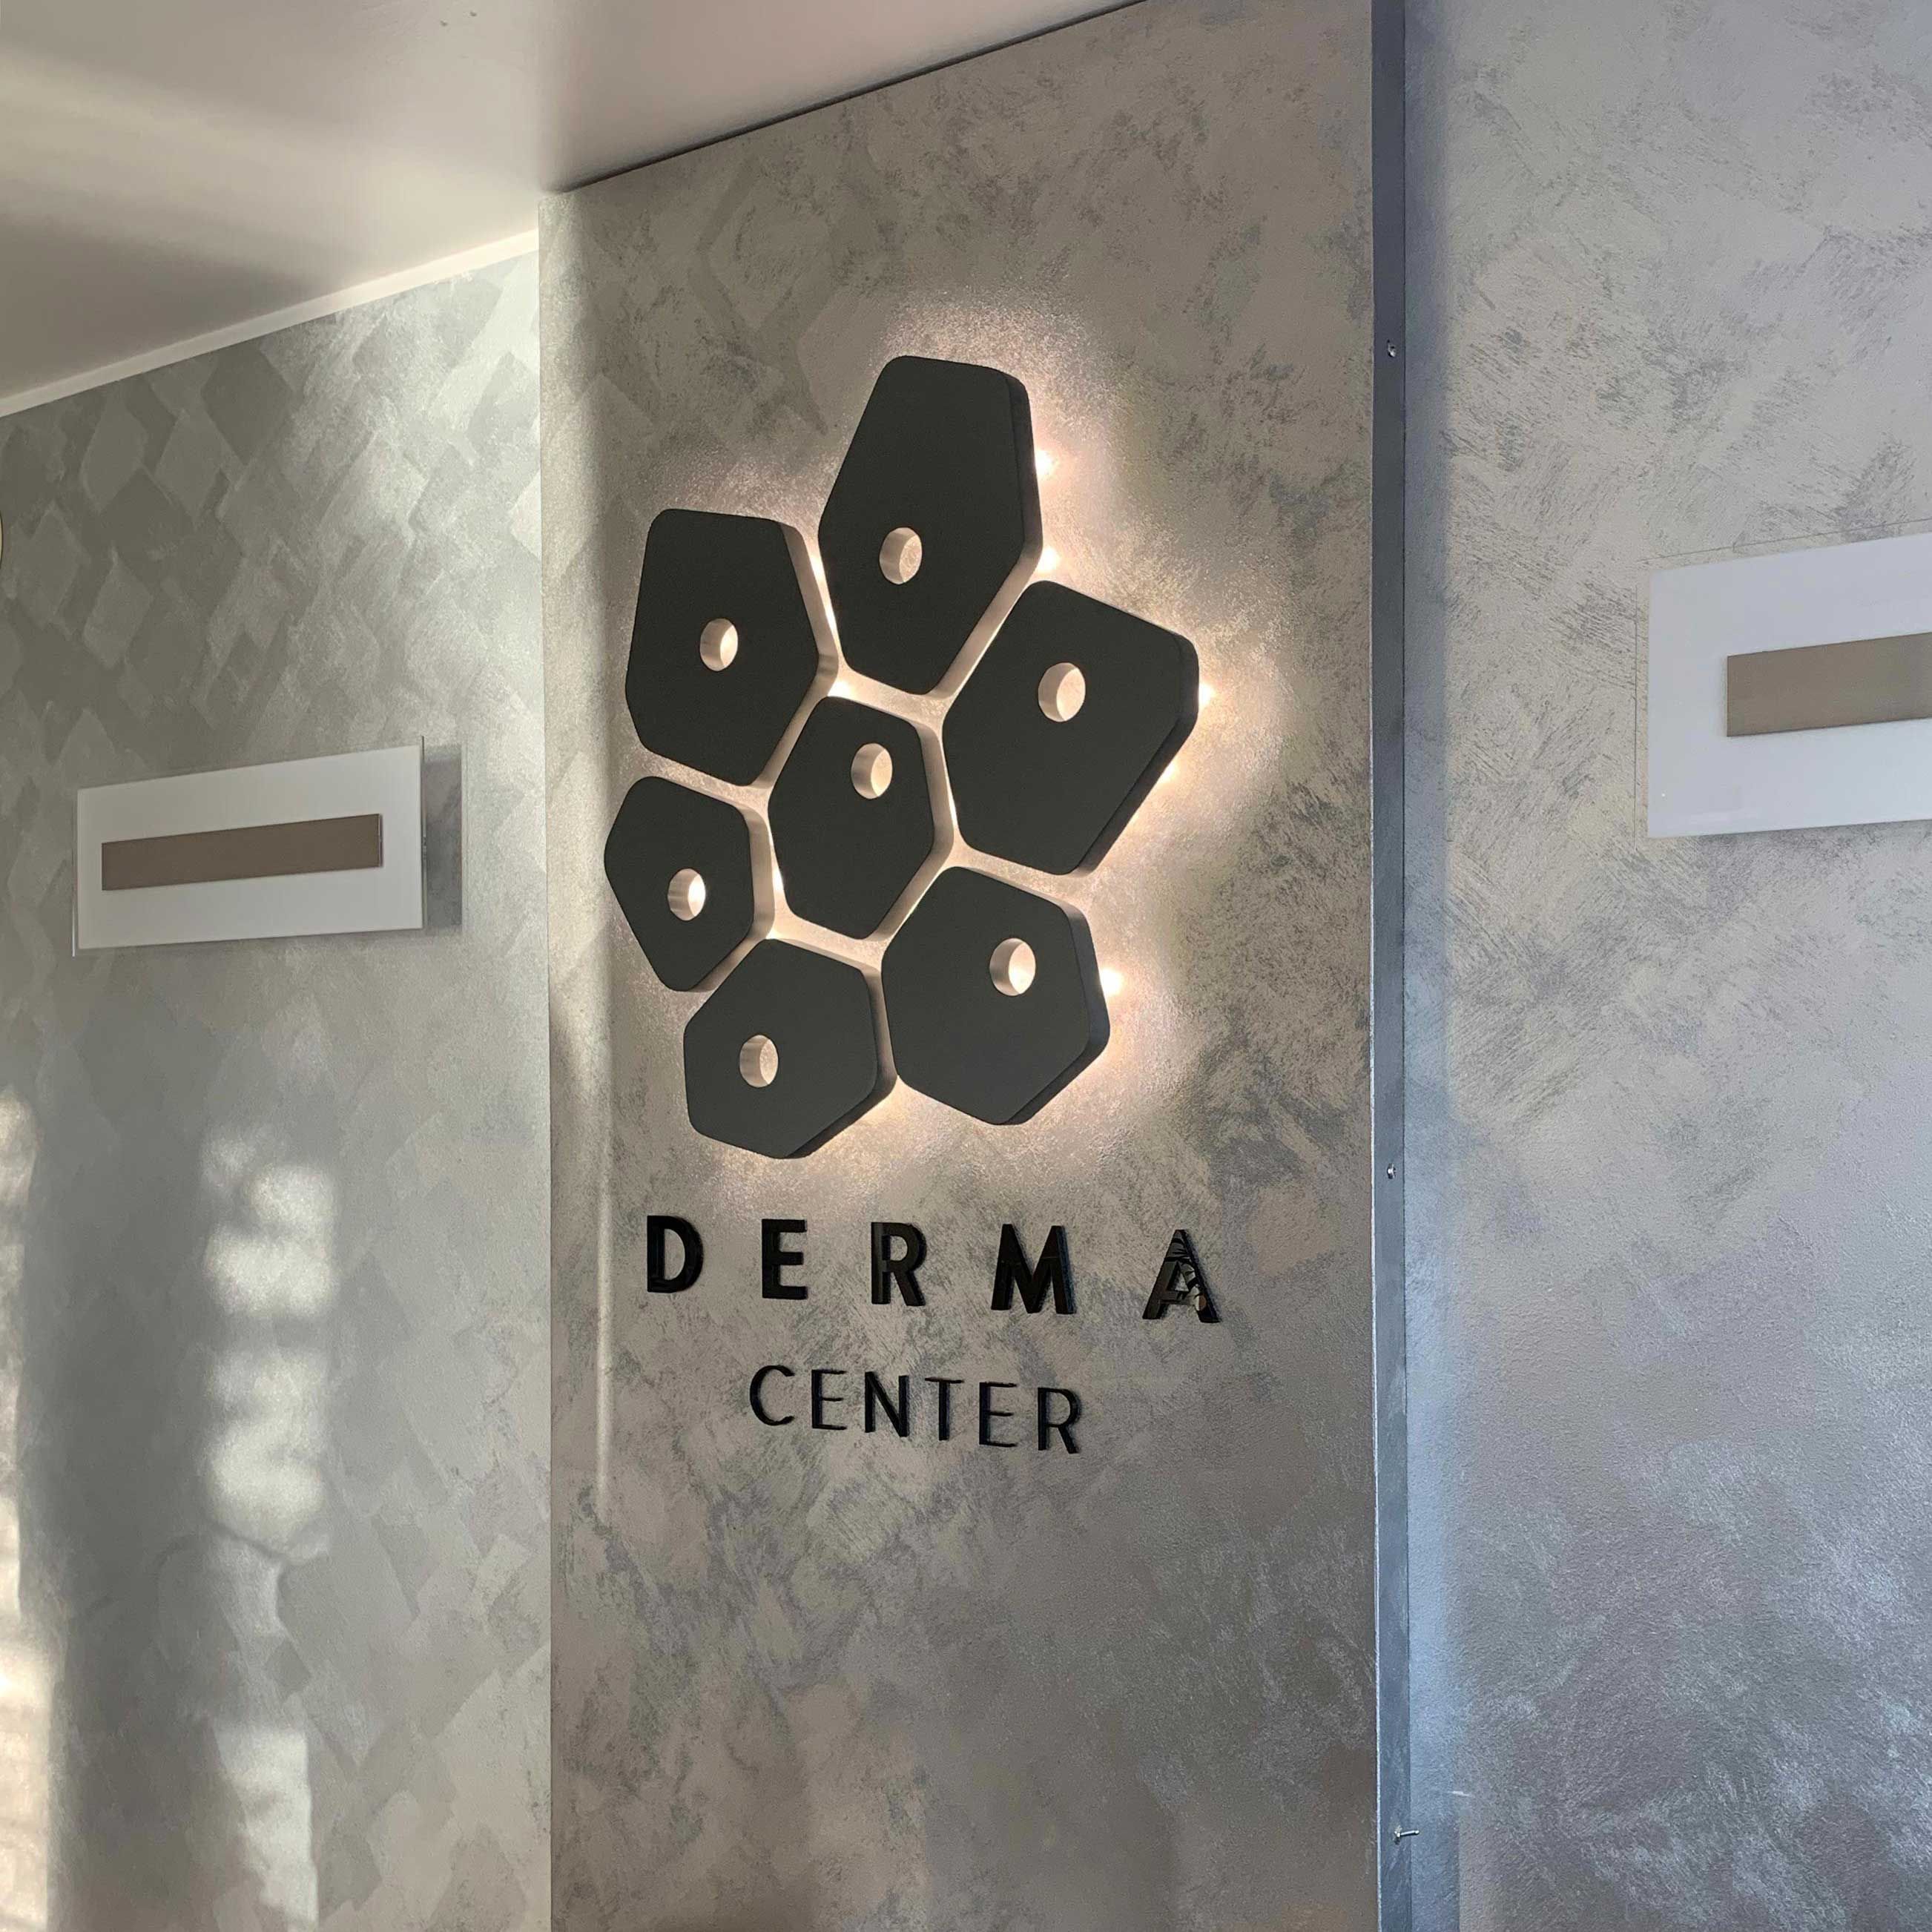 Derma Center, insegna reception